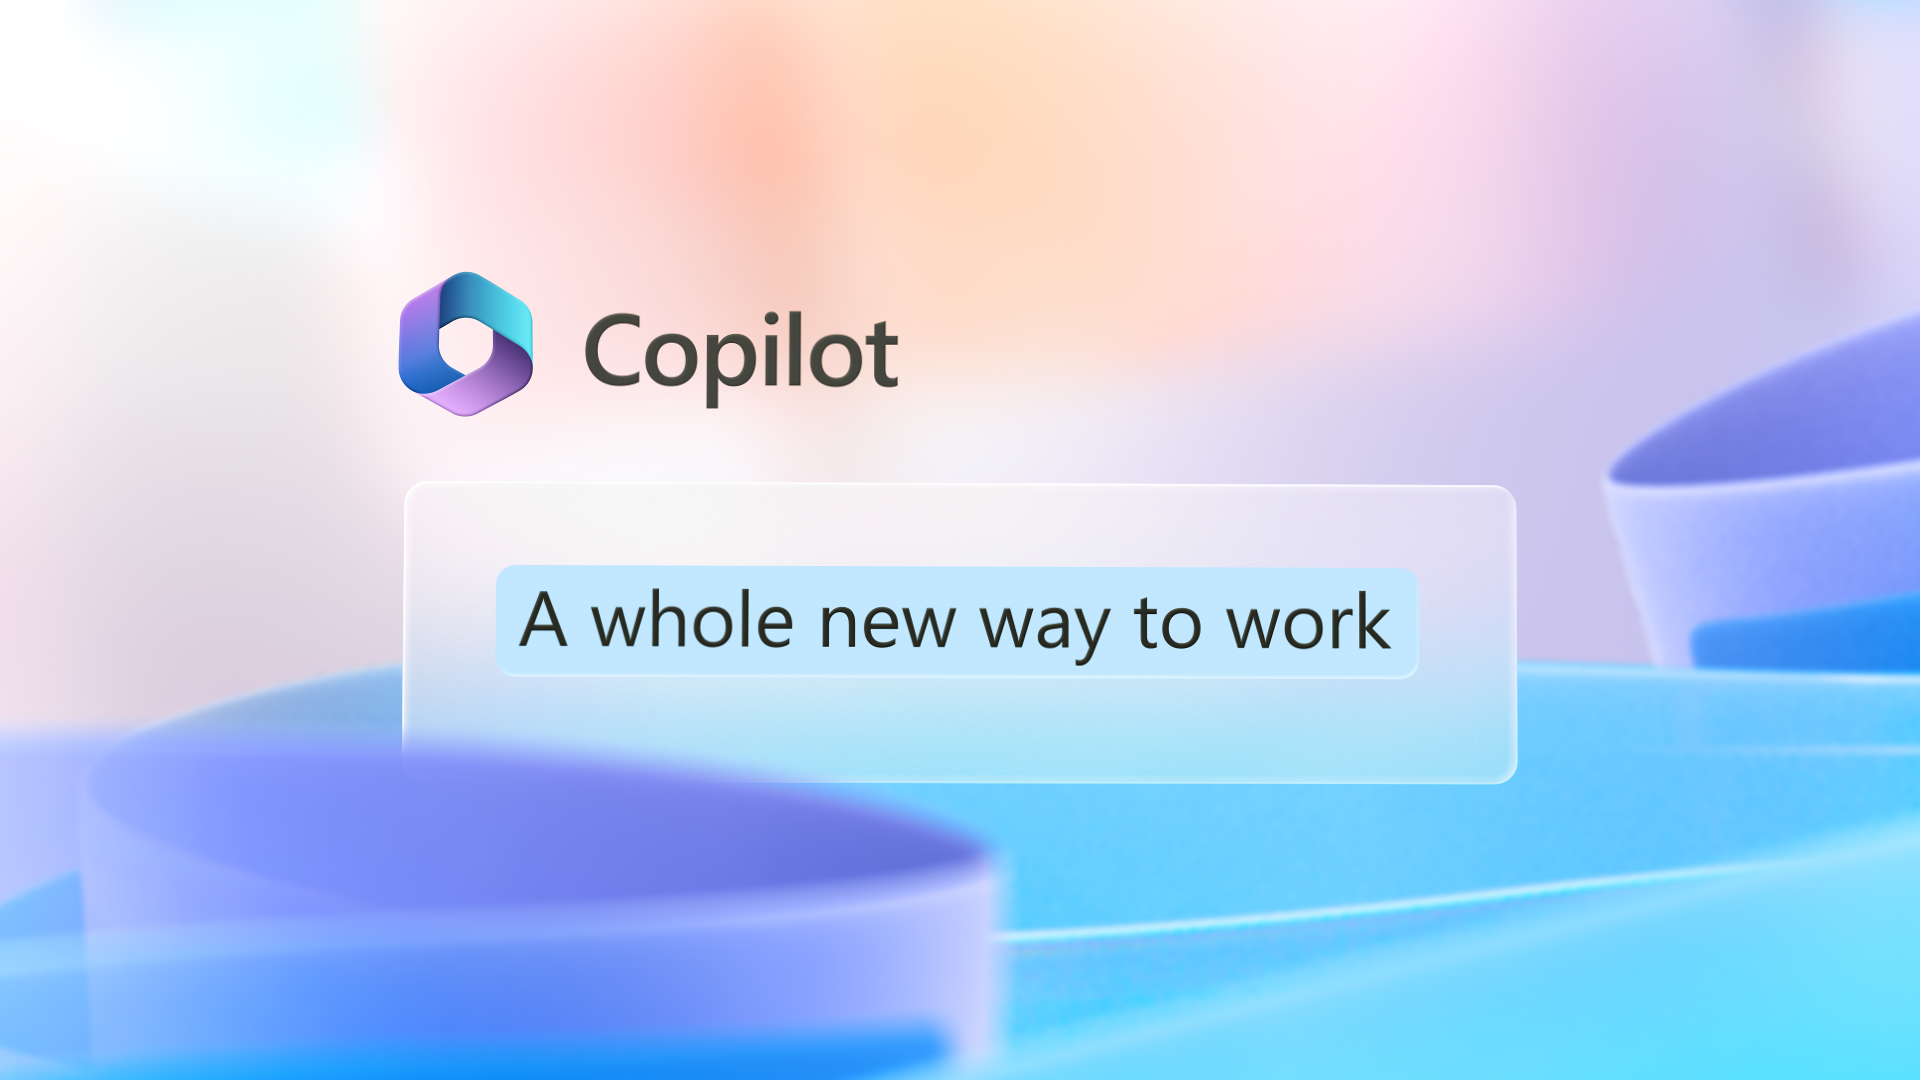 그래픽 이미지에는 완전히 새로운 작동 방식이라는 단어가 있는 Copilot 로고가 있습니다.